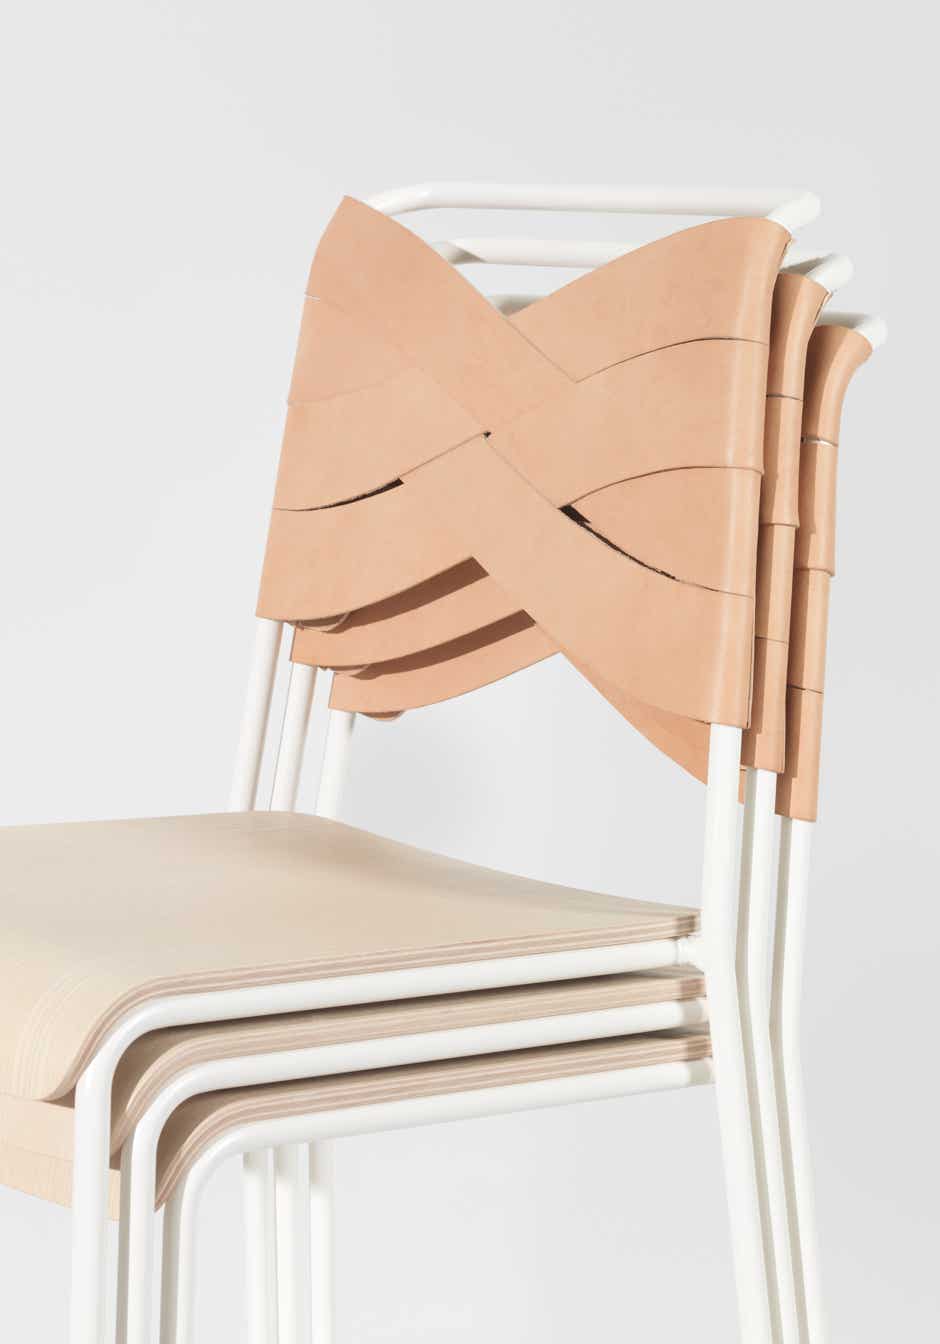 Torso chair and bar stool Lisa Hilland, 2017